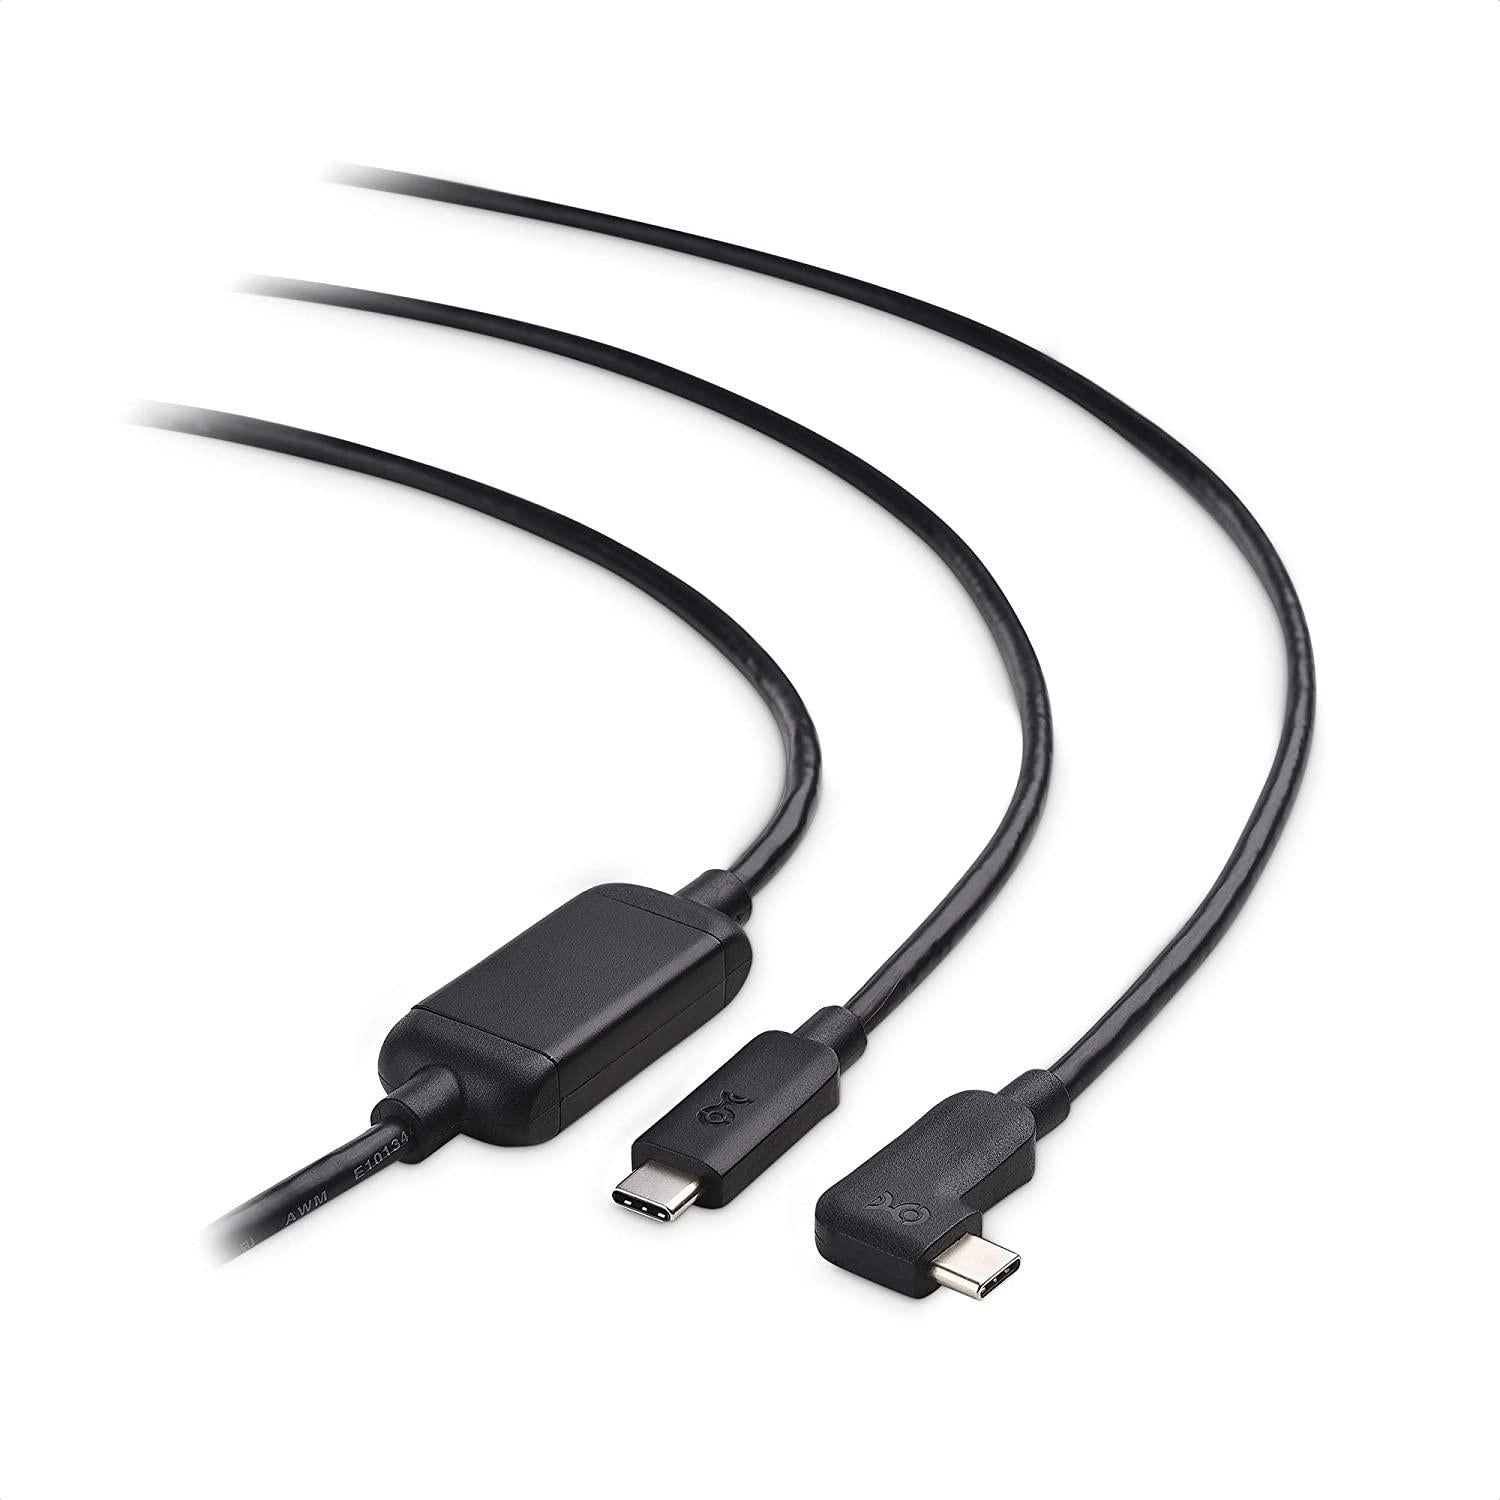 Cable Matters aktivt 75 m USB-C til USB-C VR Link-kabel til Oculus Quest 2 USB3.2 Gen1 5 Gbps 3A Super Speed VR Link-kabel